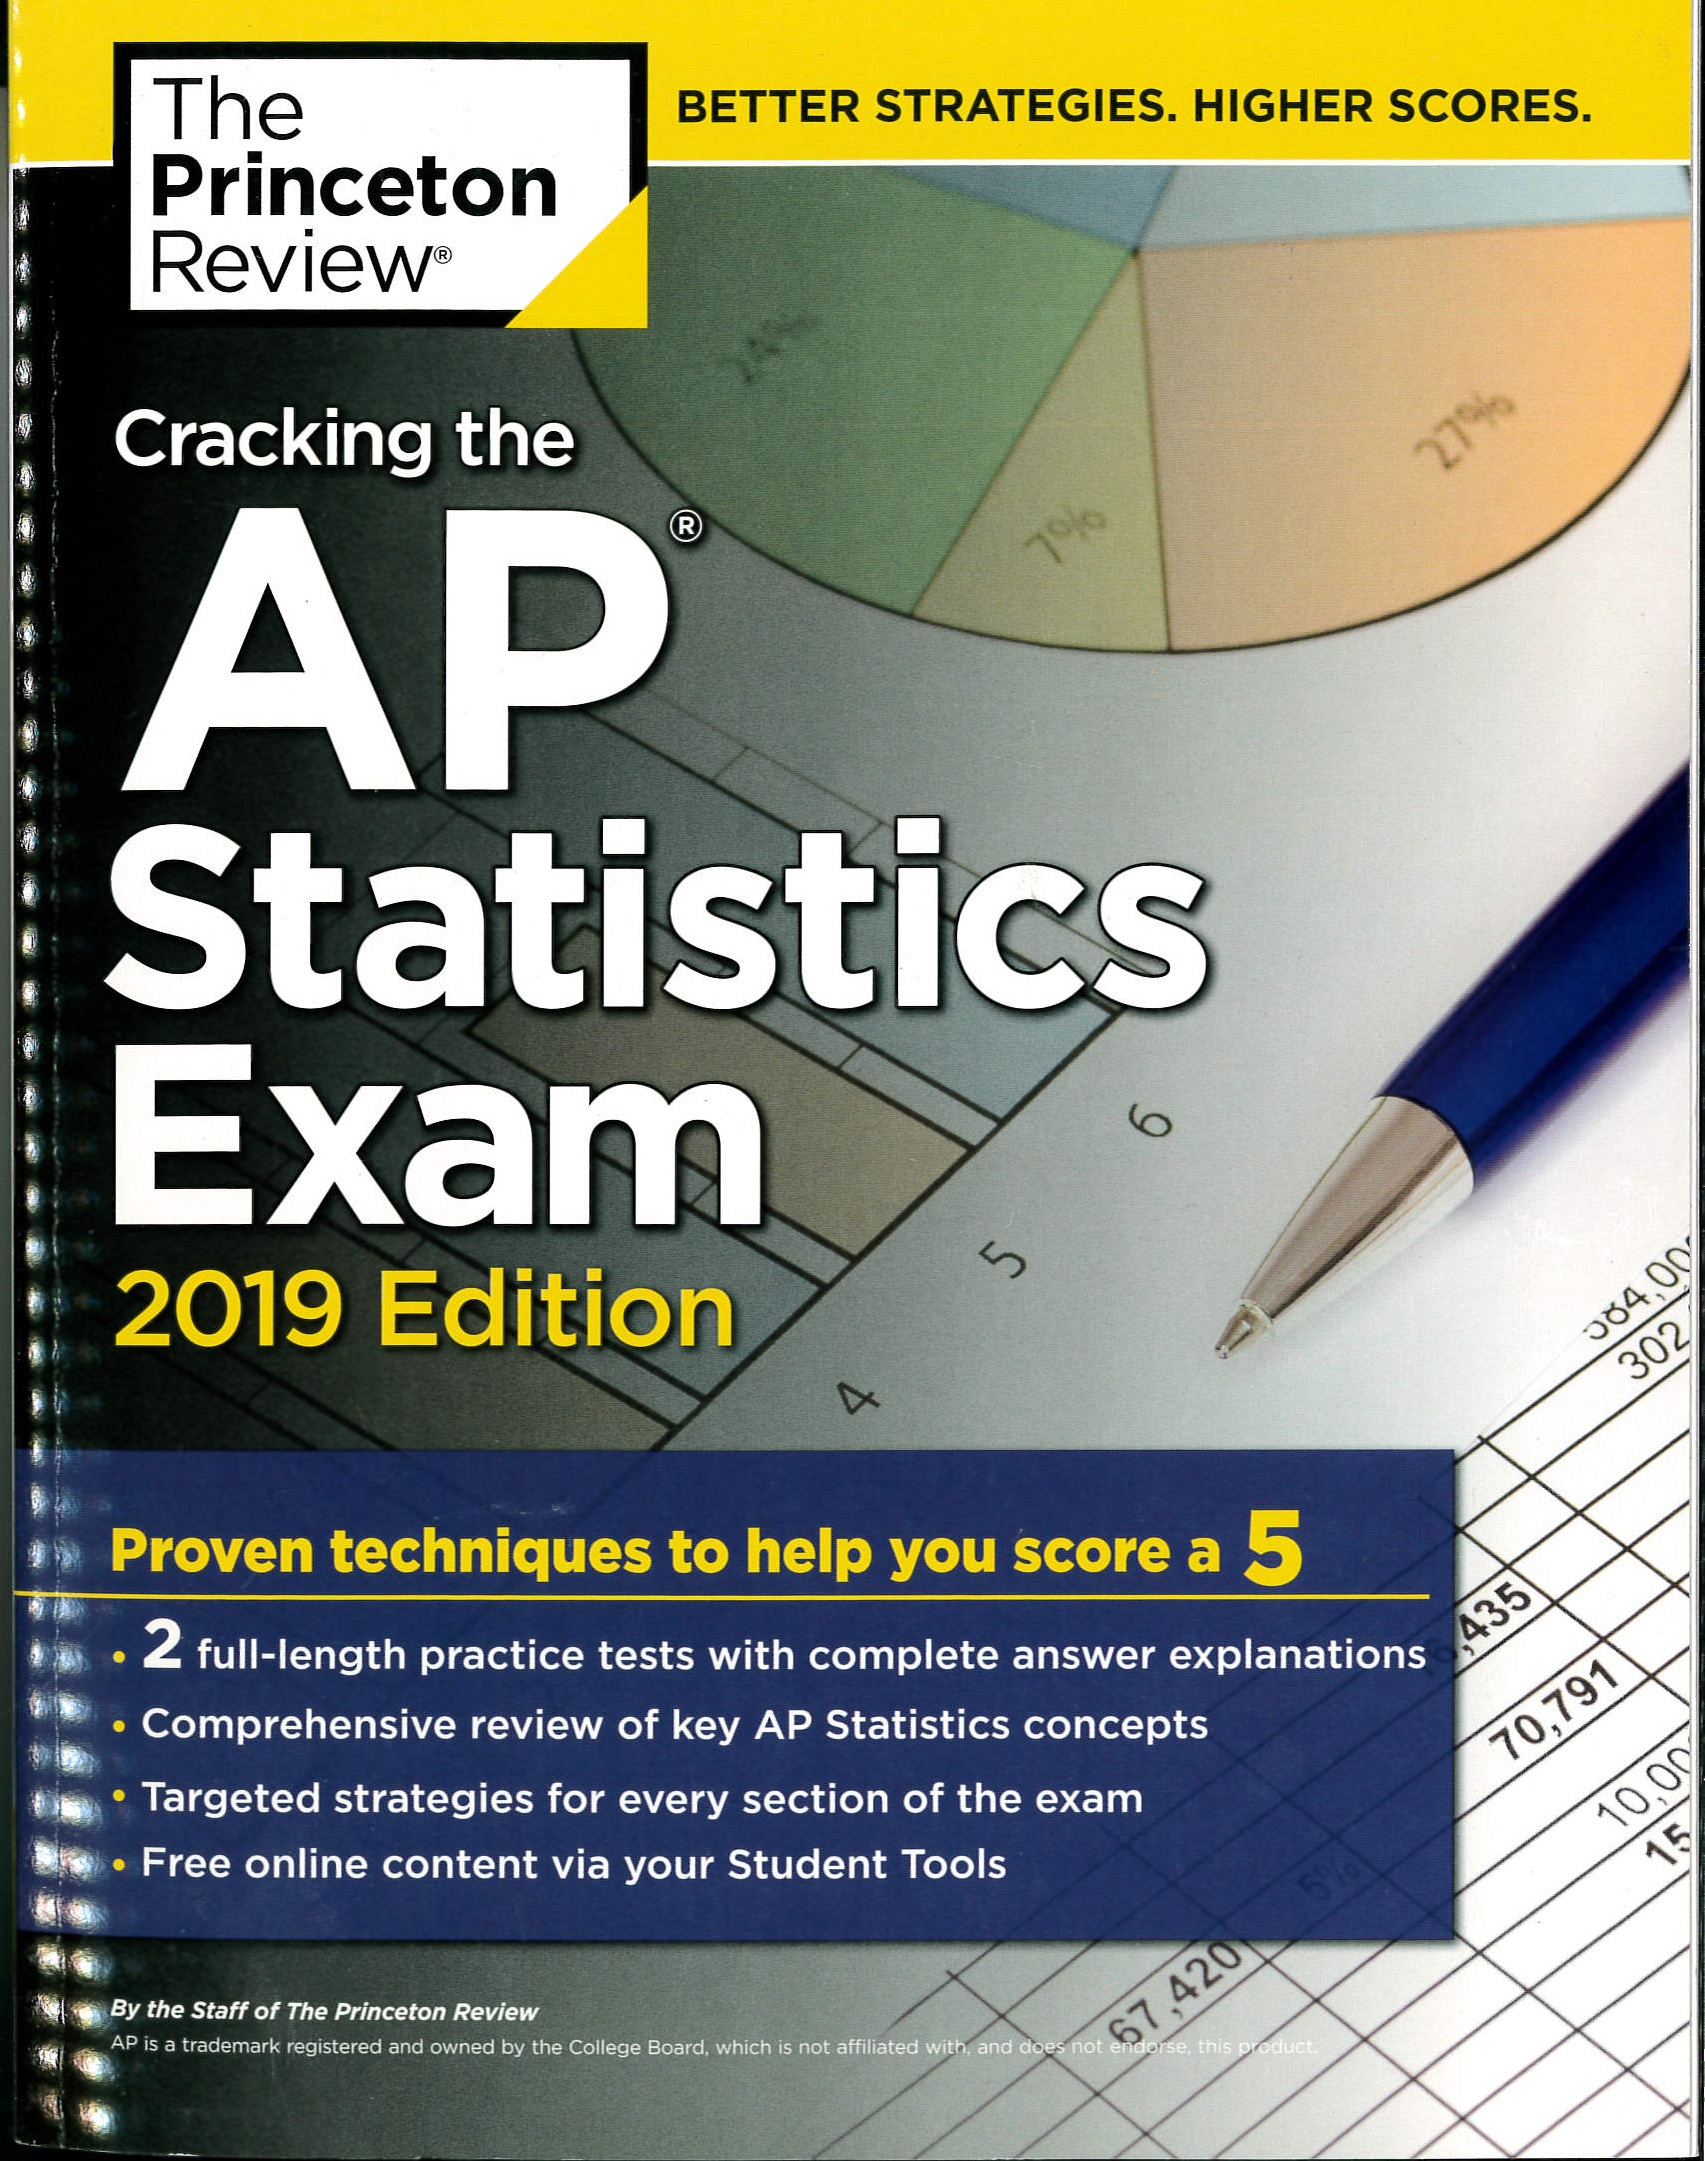 Cracking the AP statistics exam